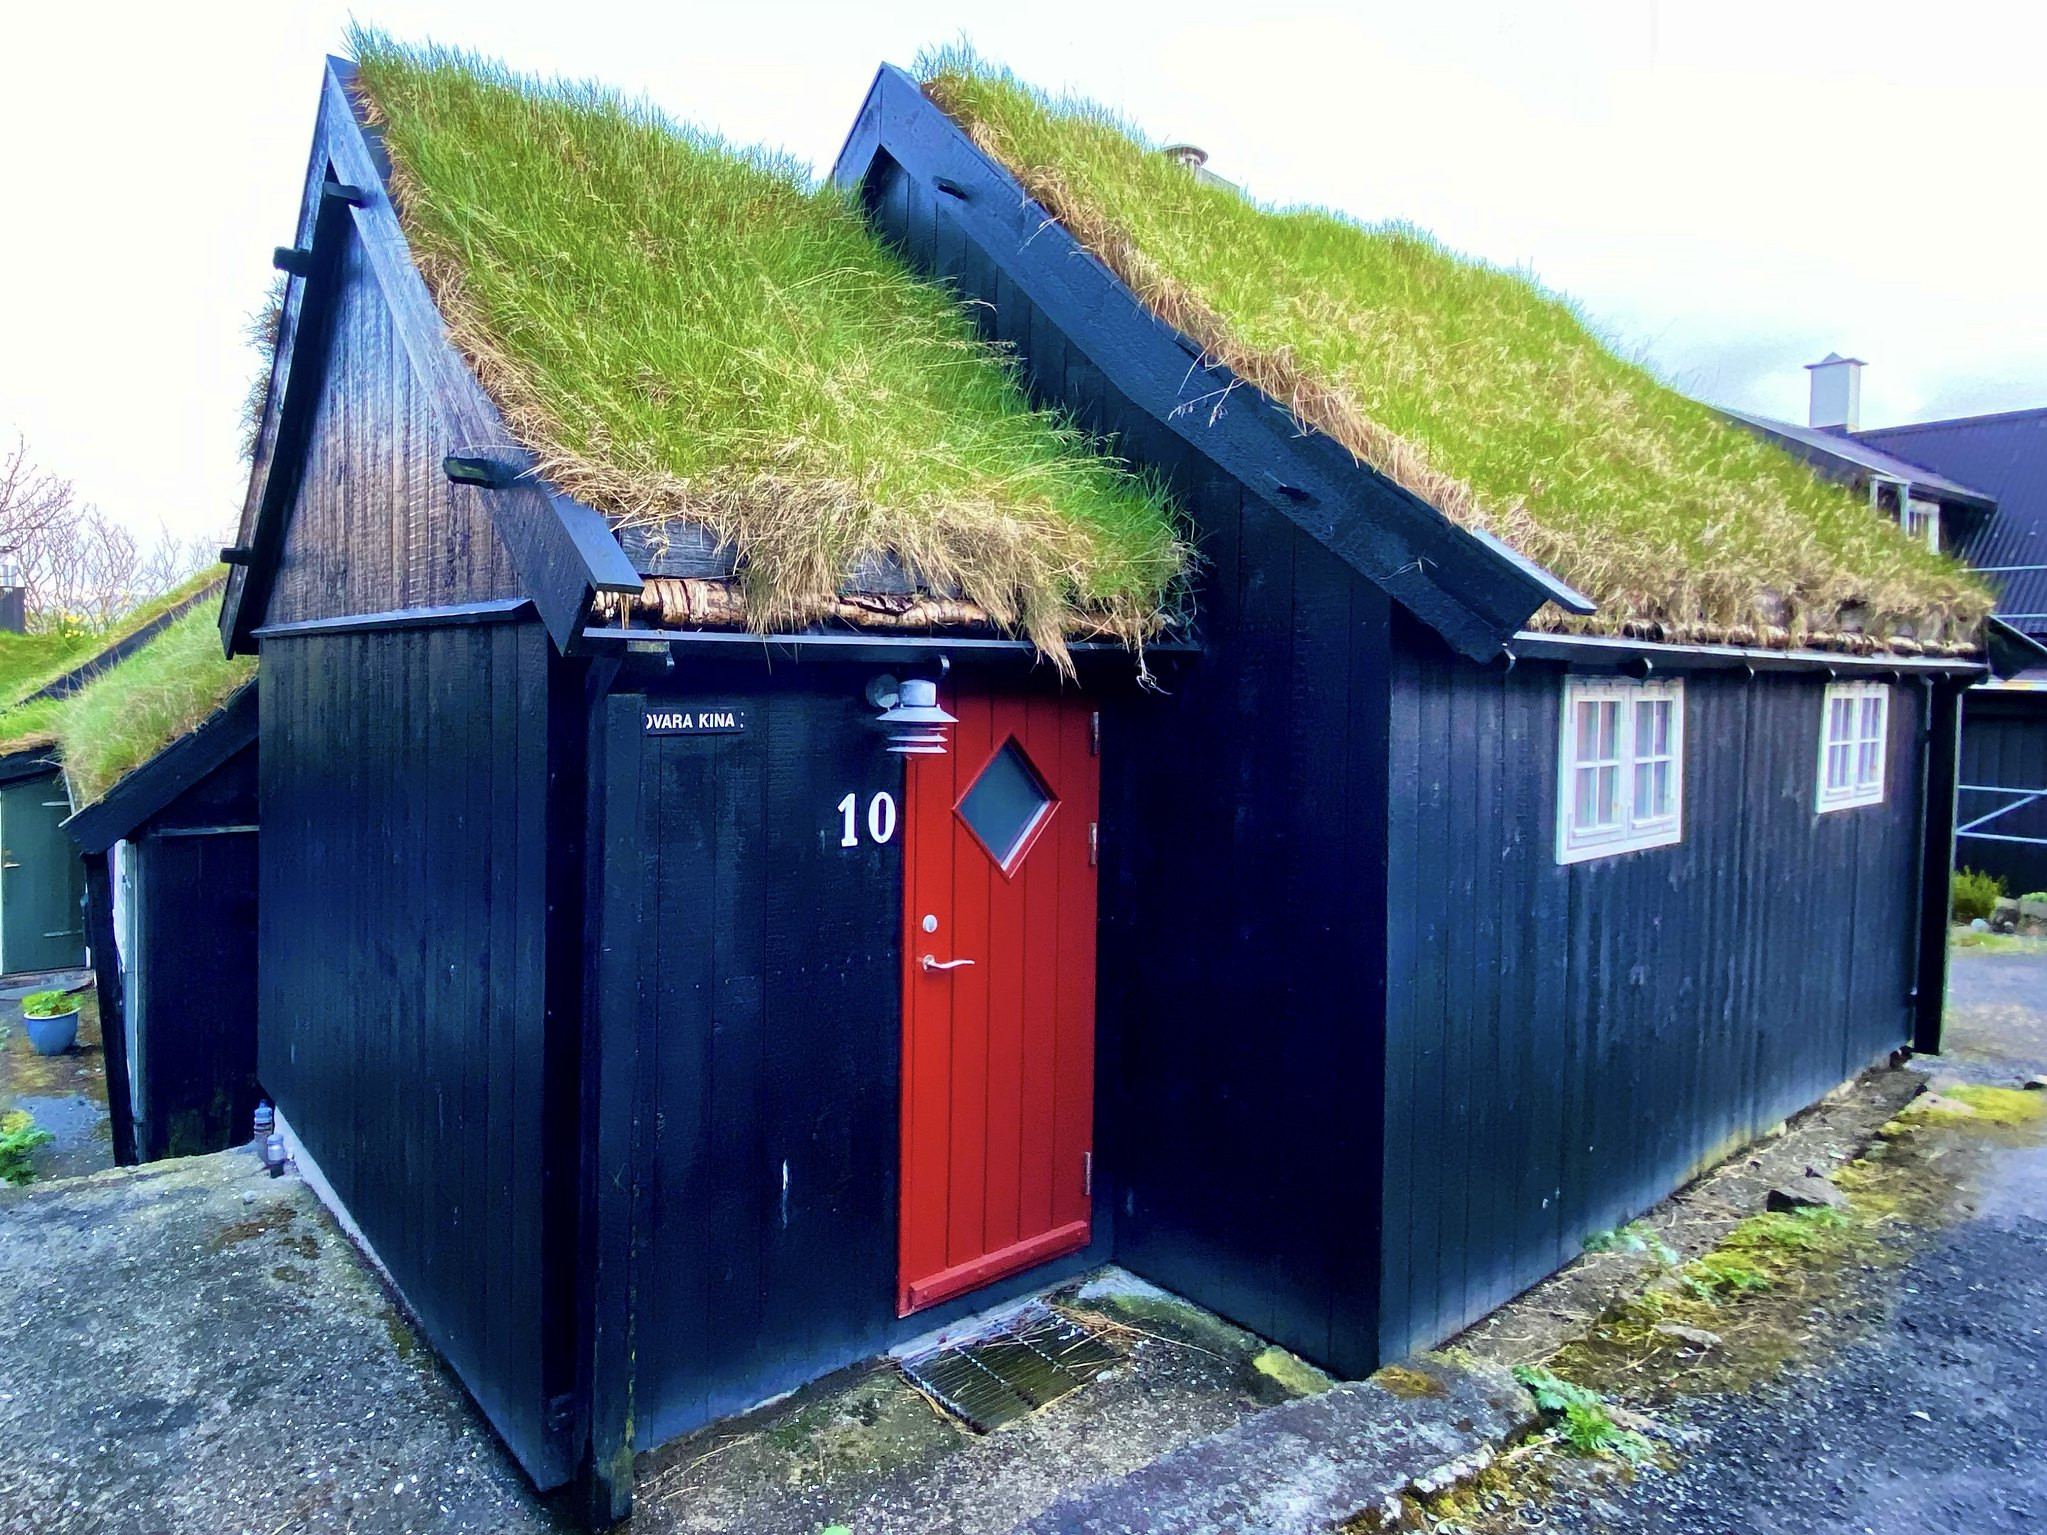 OY/DJ3HG Faroe Islands